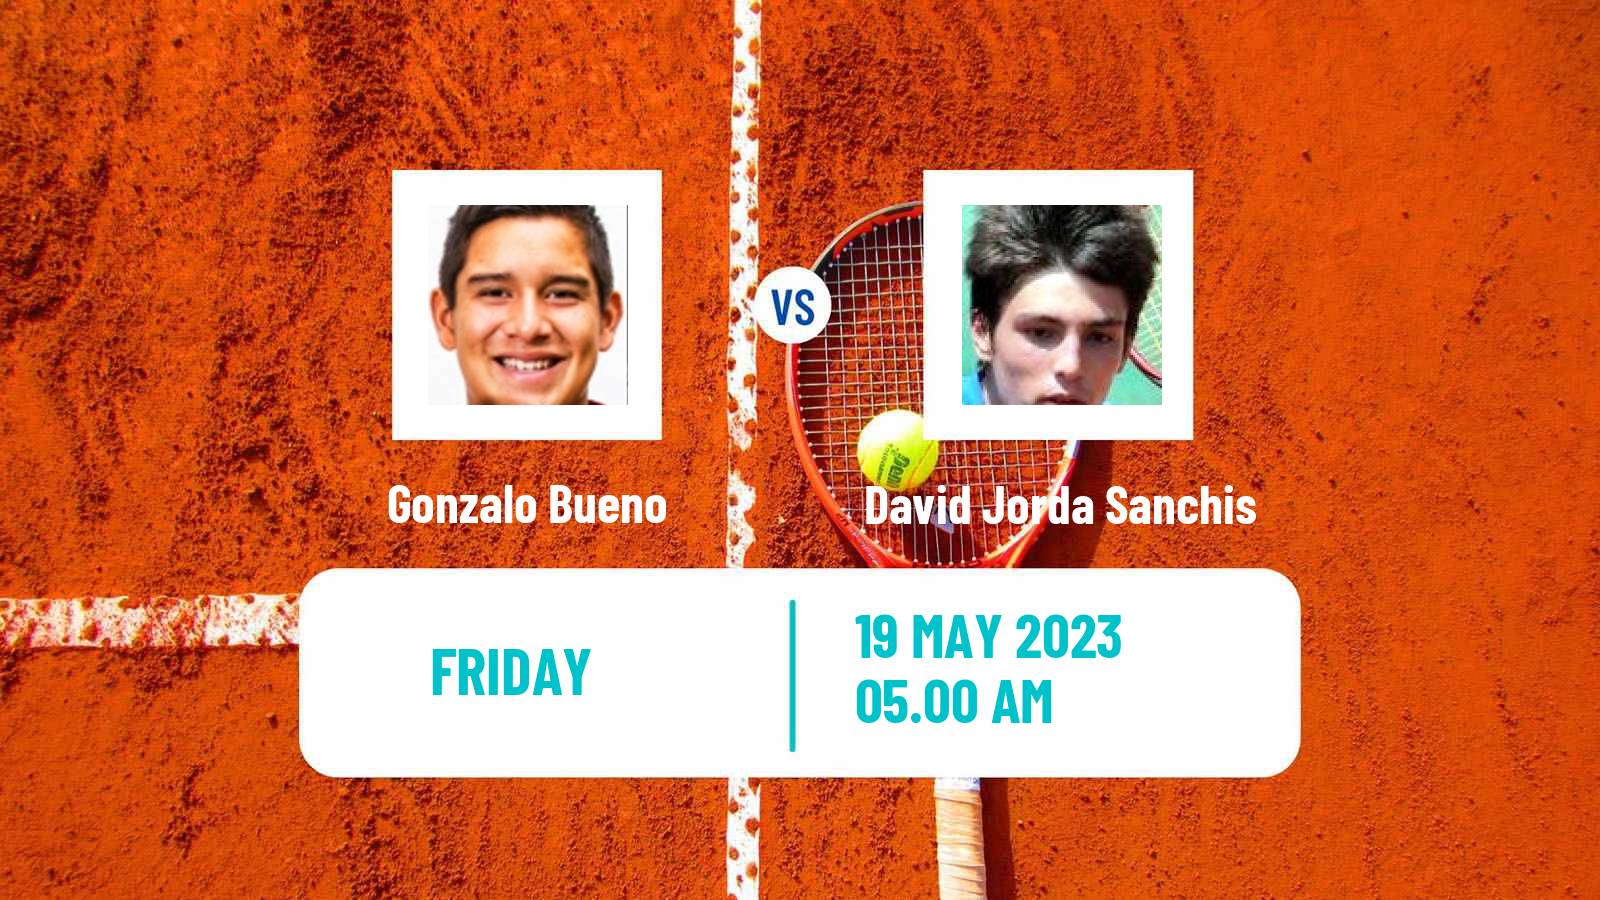 Tennis ITF M25 Gurb Men Gonzalo Bueno - David Jorda Sanchis